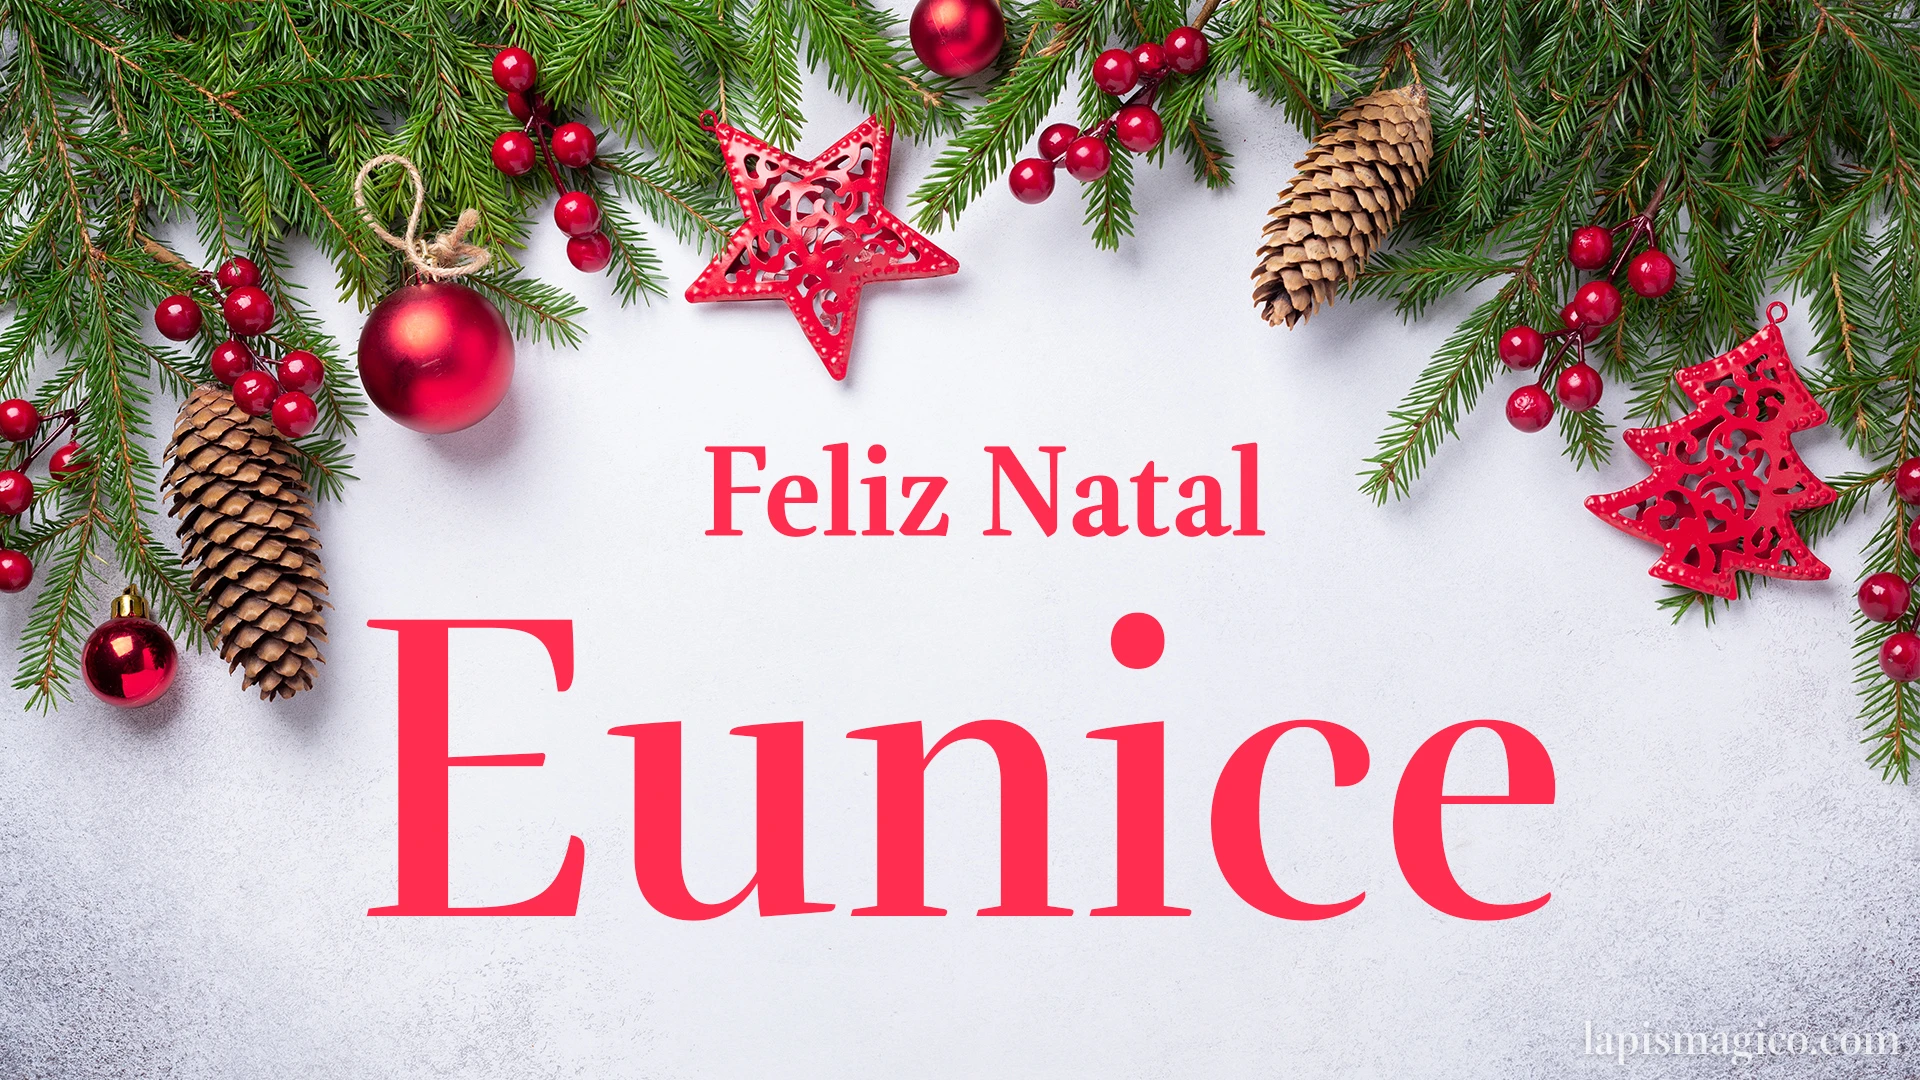 Oh Eunice, cinco postais de Feliz Natal Postal com o teu nome